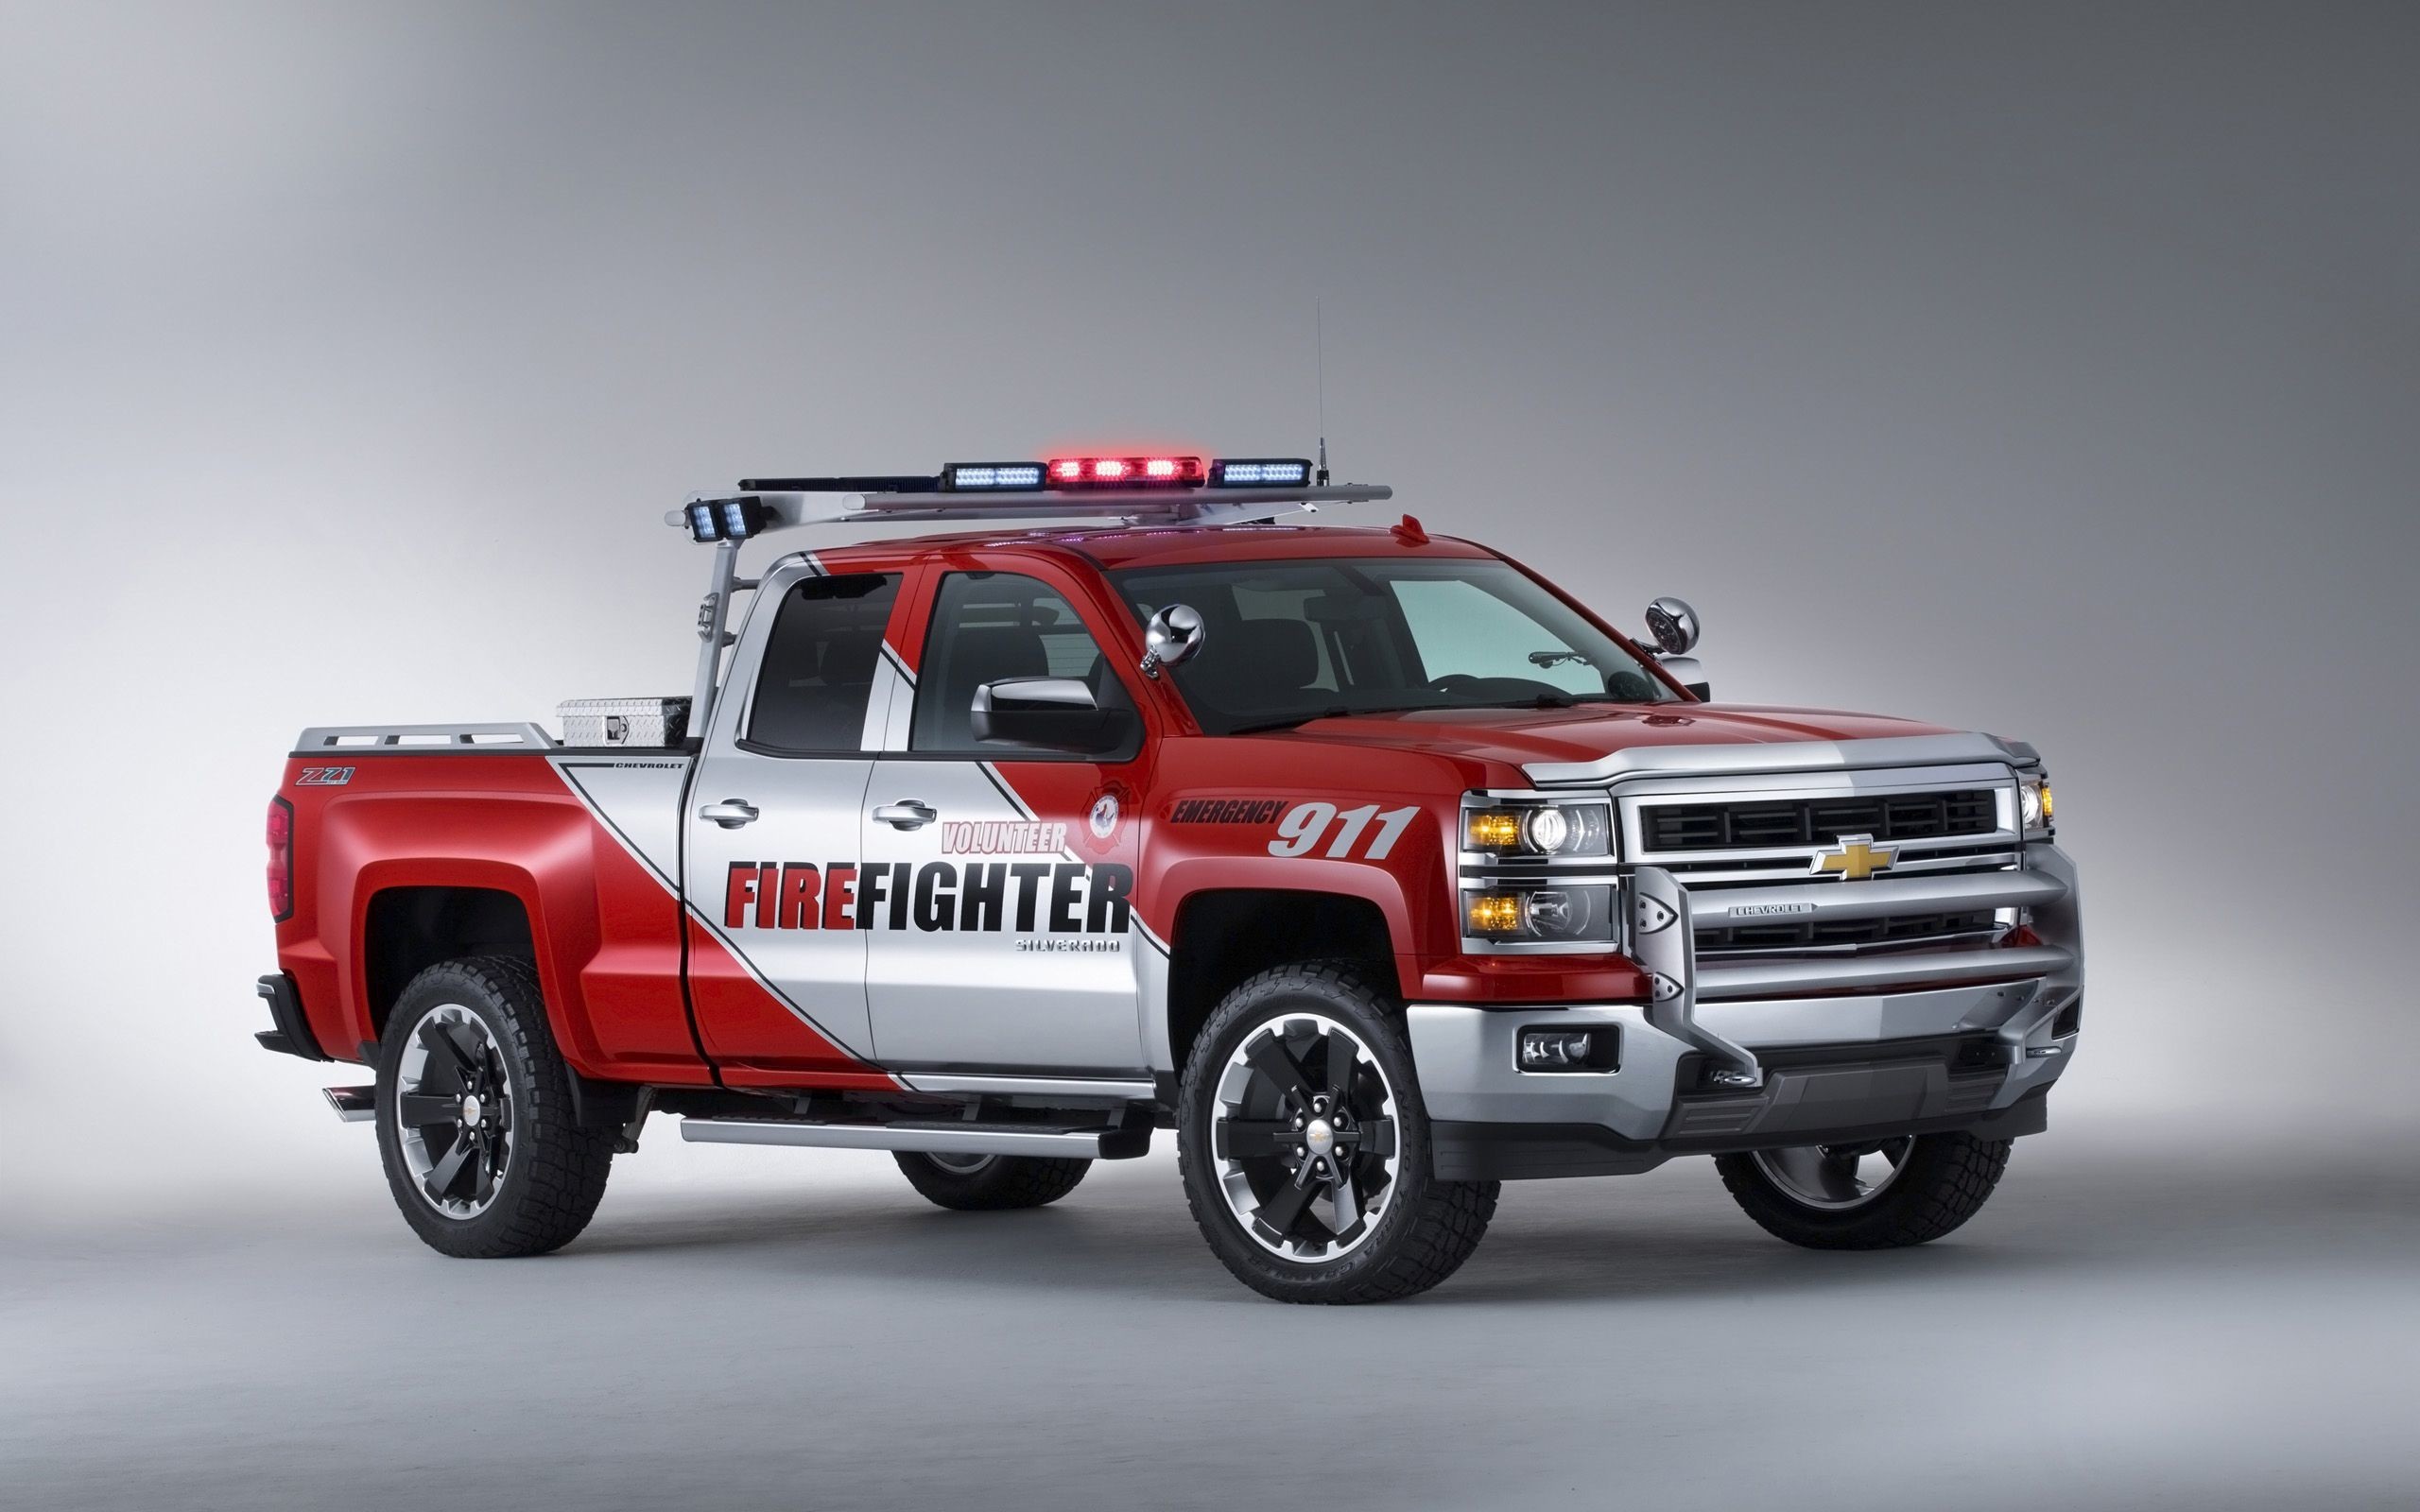 2560x1600 Chuck Miller Fire Truck